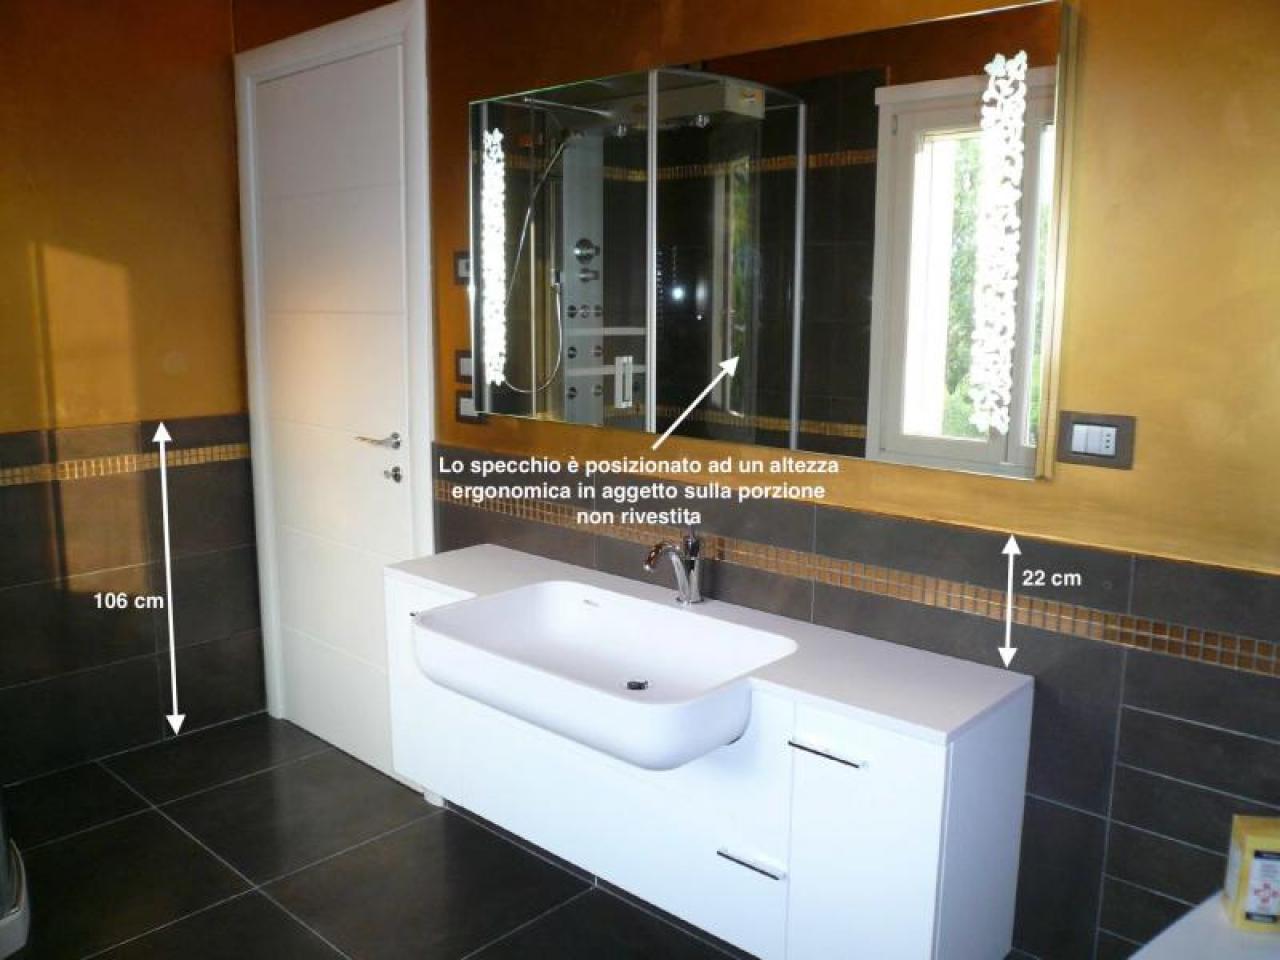 Specchio bagno: quale scegliere?, Fratelli Pellizzari, Vicenza